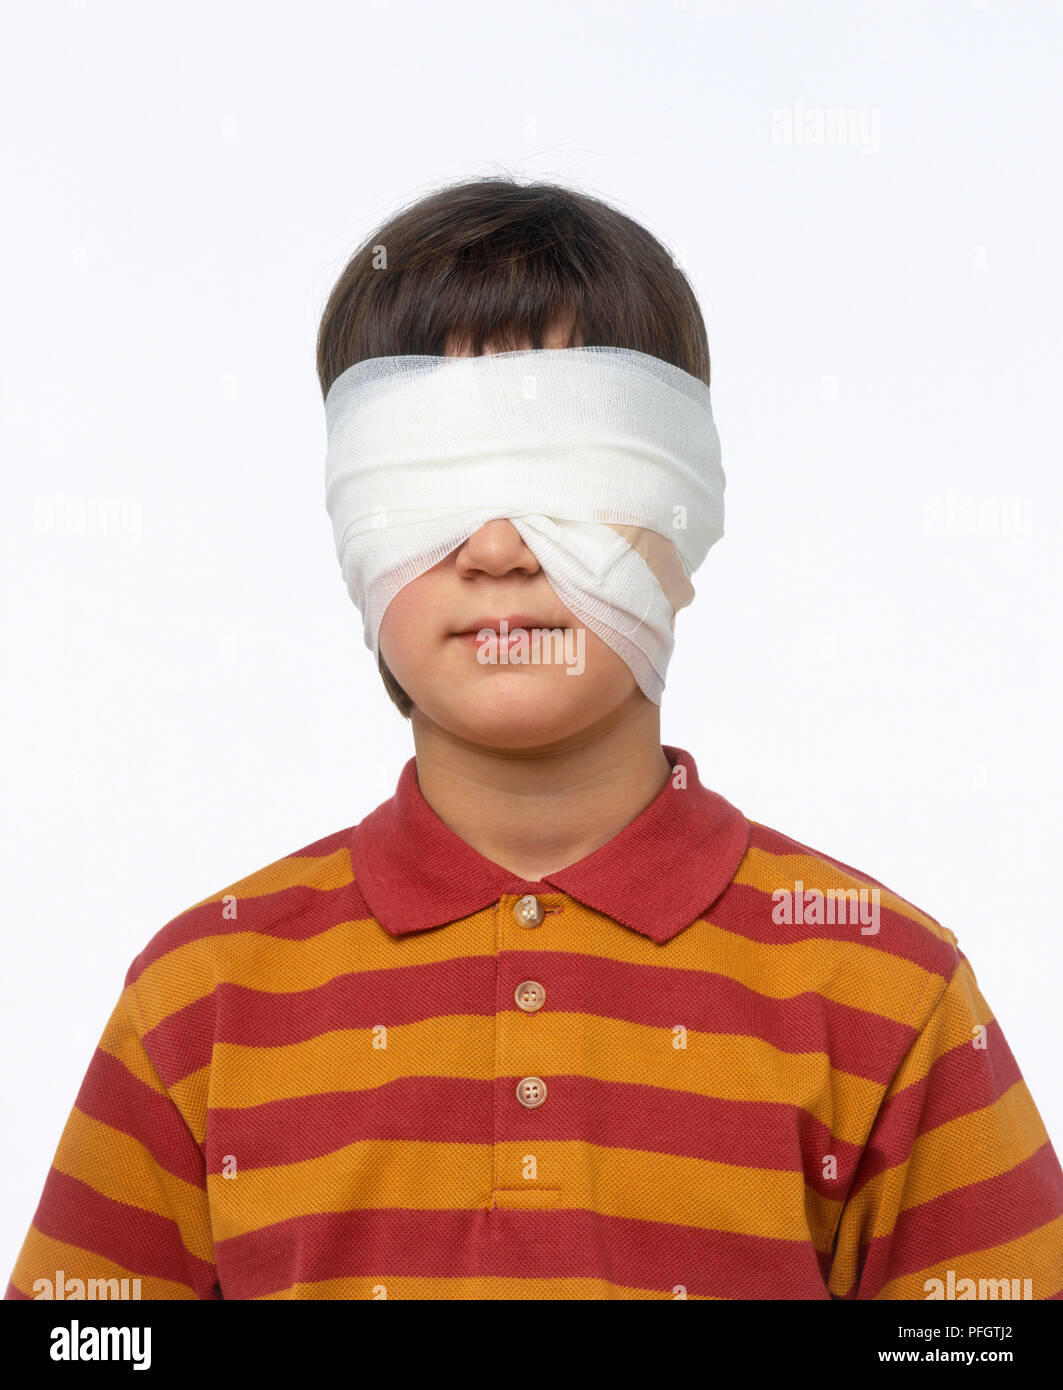 Garçon avec des bandages autour des yeux Photo Stock - Alamy